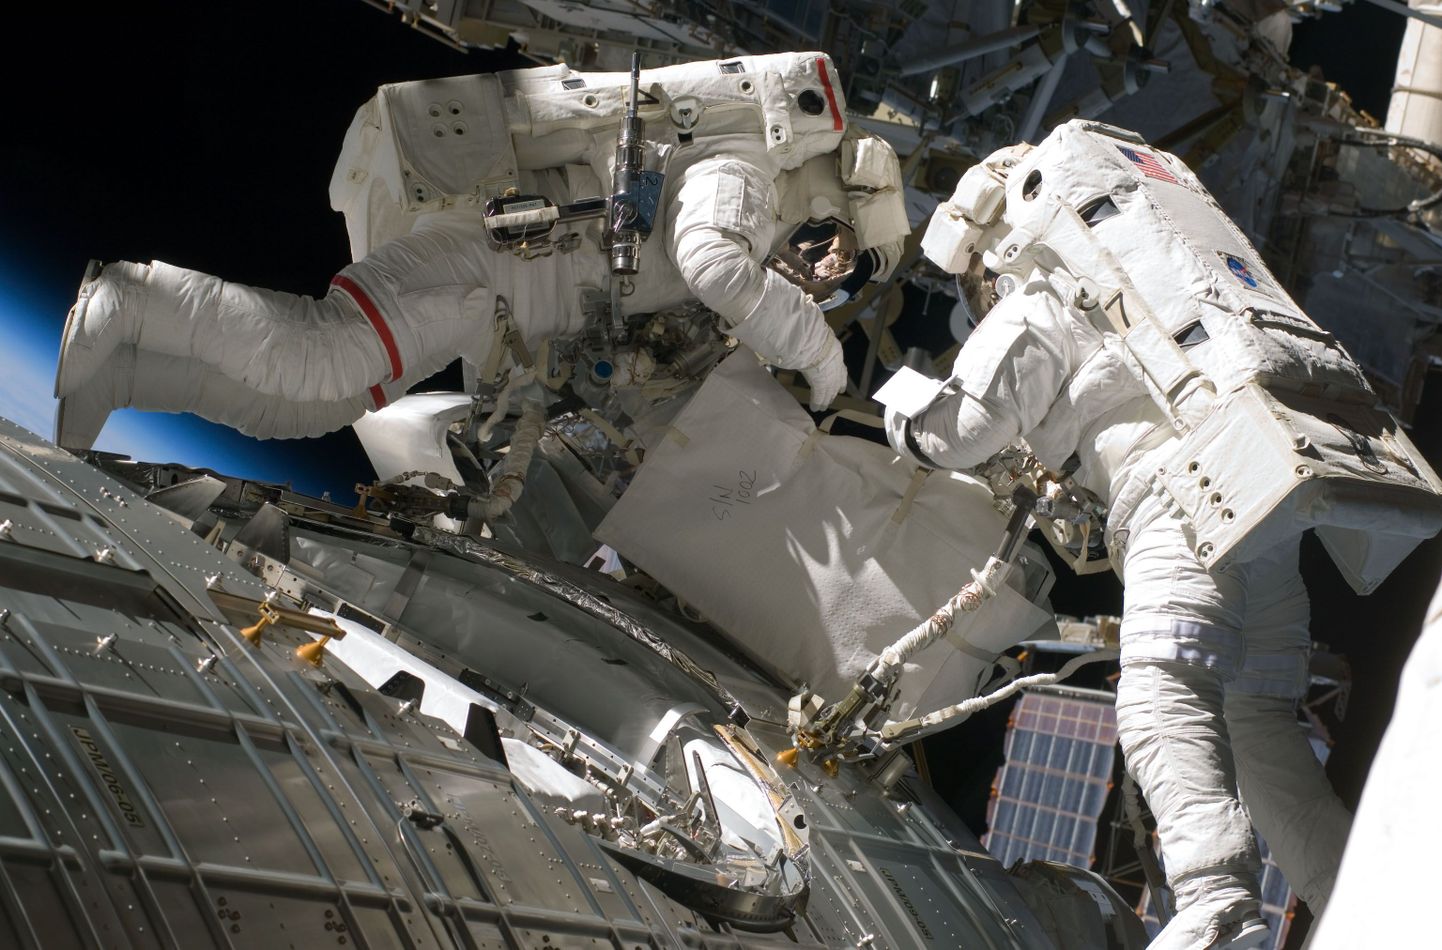 NASA astronaudid Mike Fossum (vasakul) ja Ron Garan kosmosekõnnil rahvusvahelises kosmosejaamas